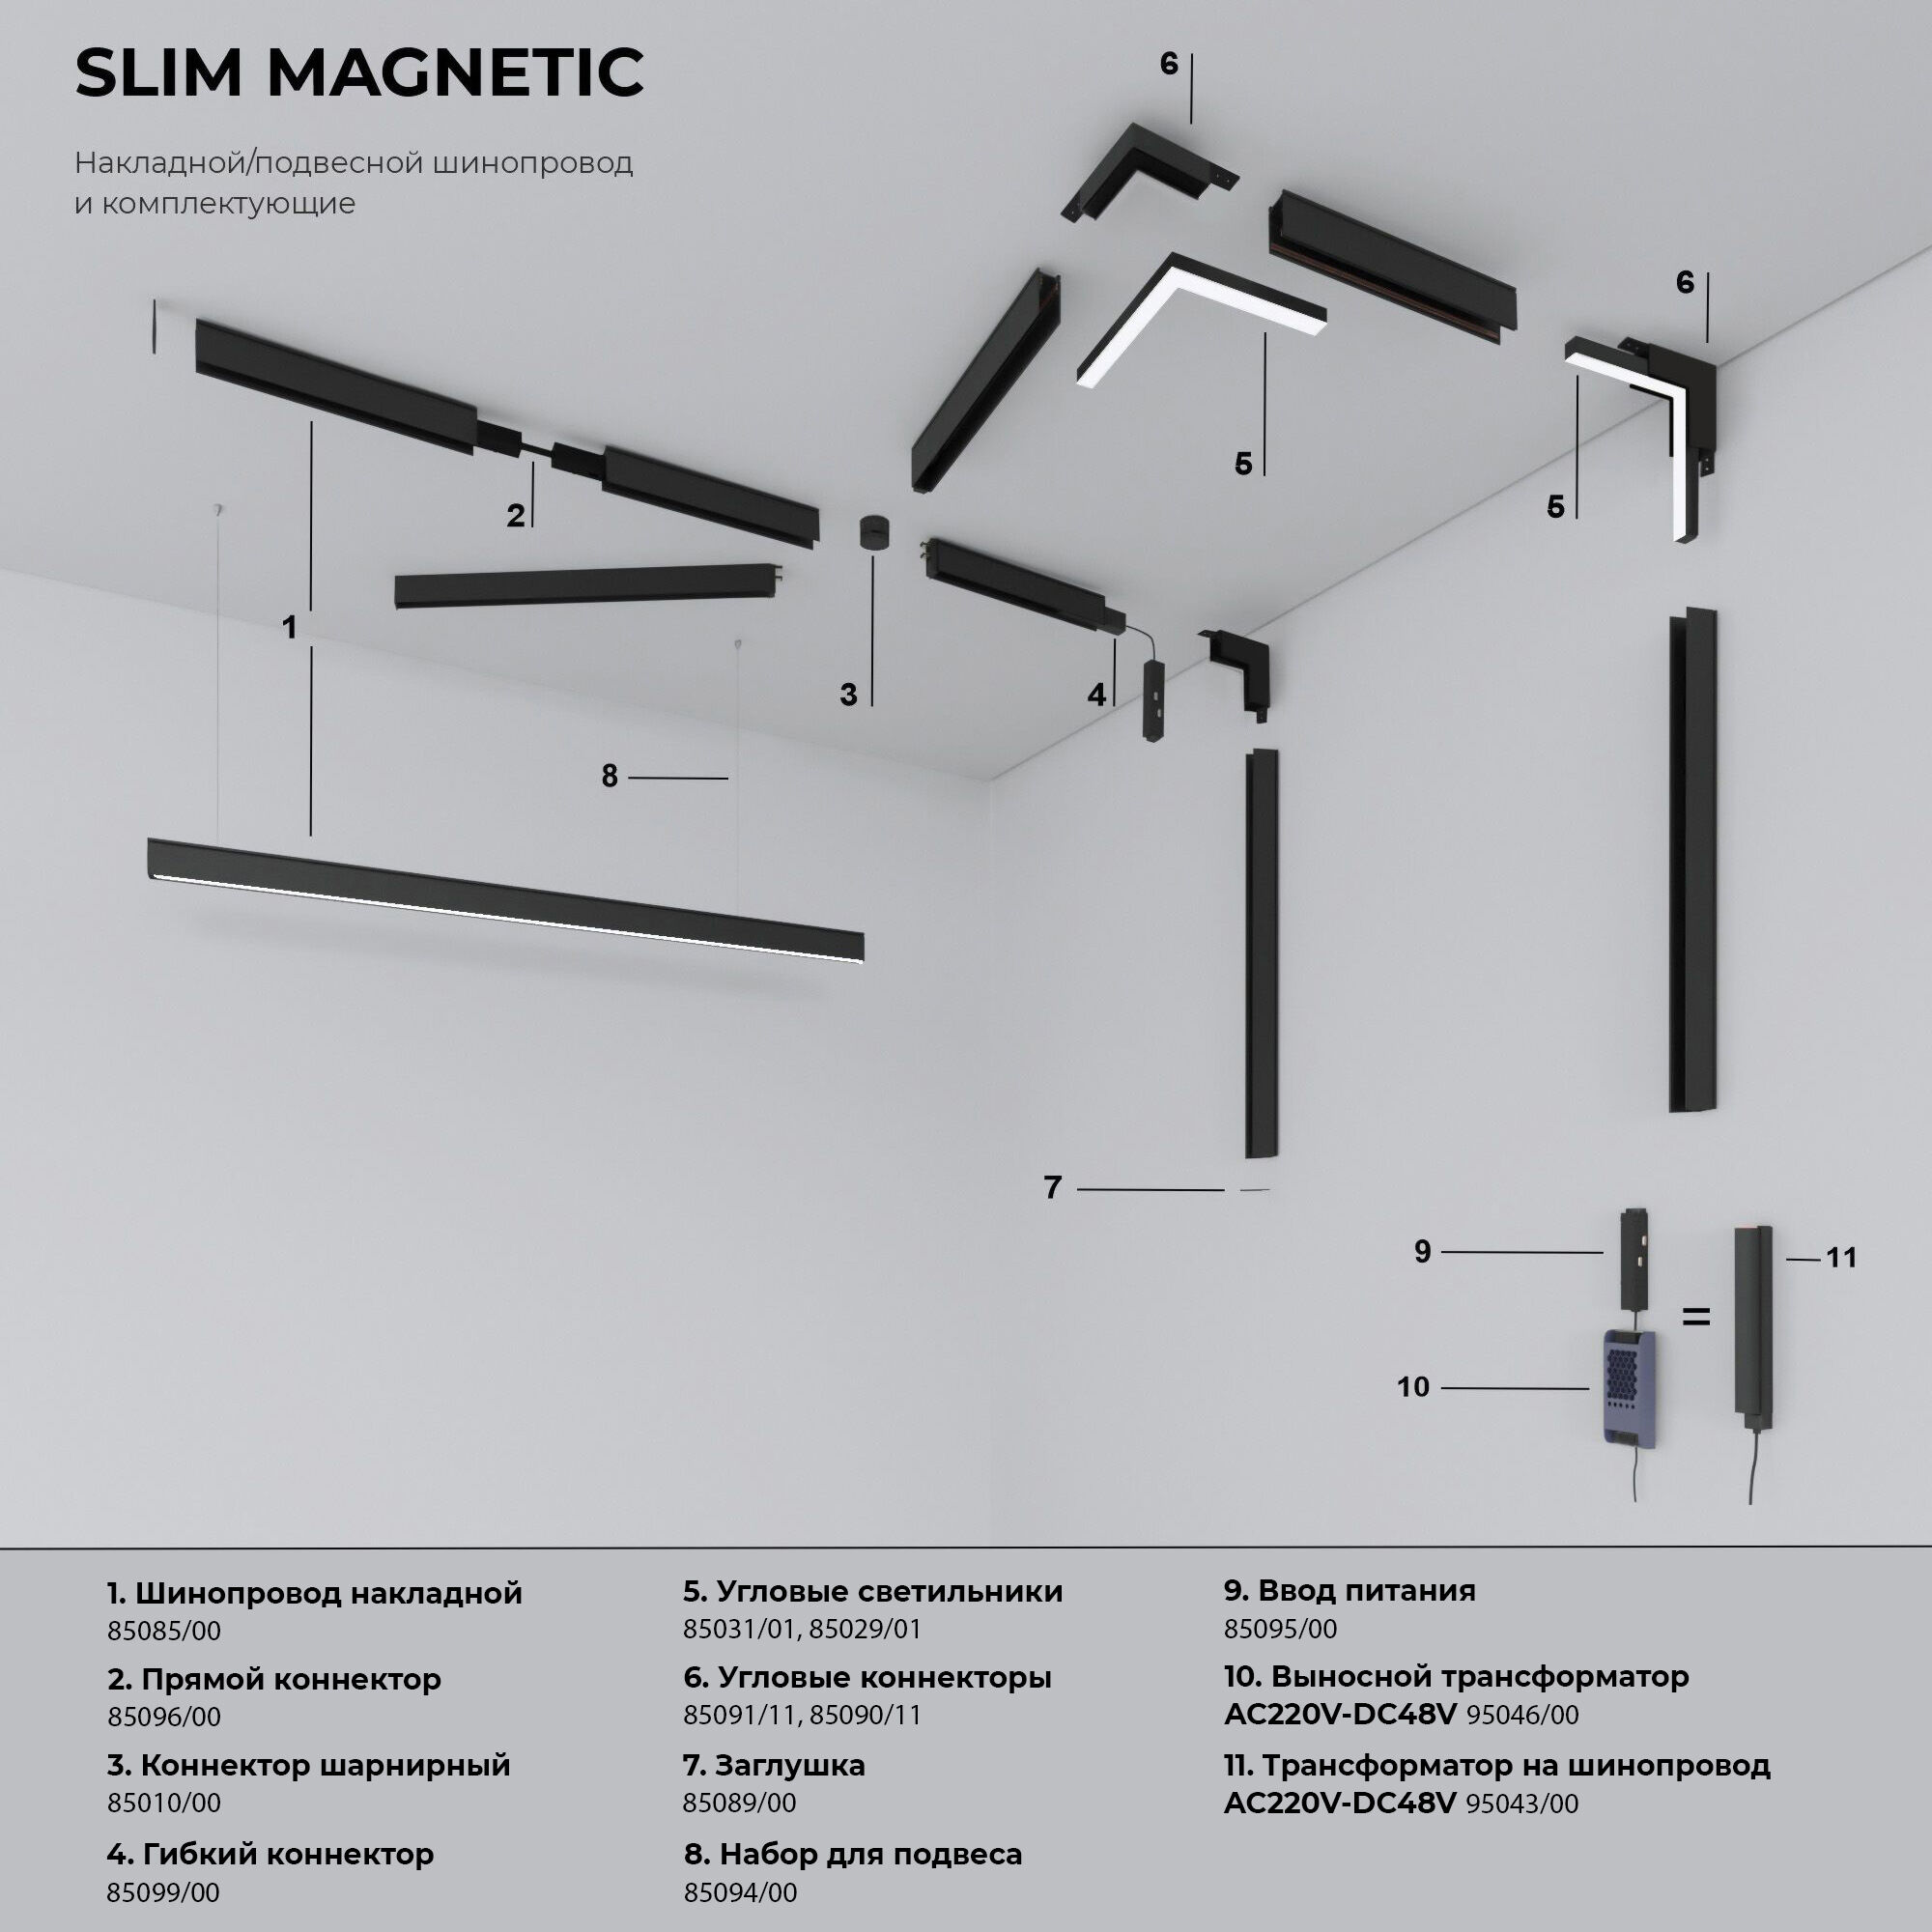 Slim Magnetic Блок питания 100W 95043/00